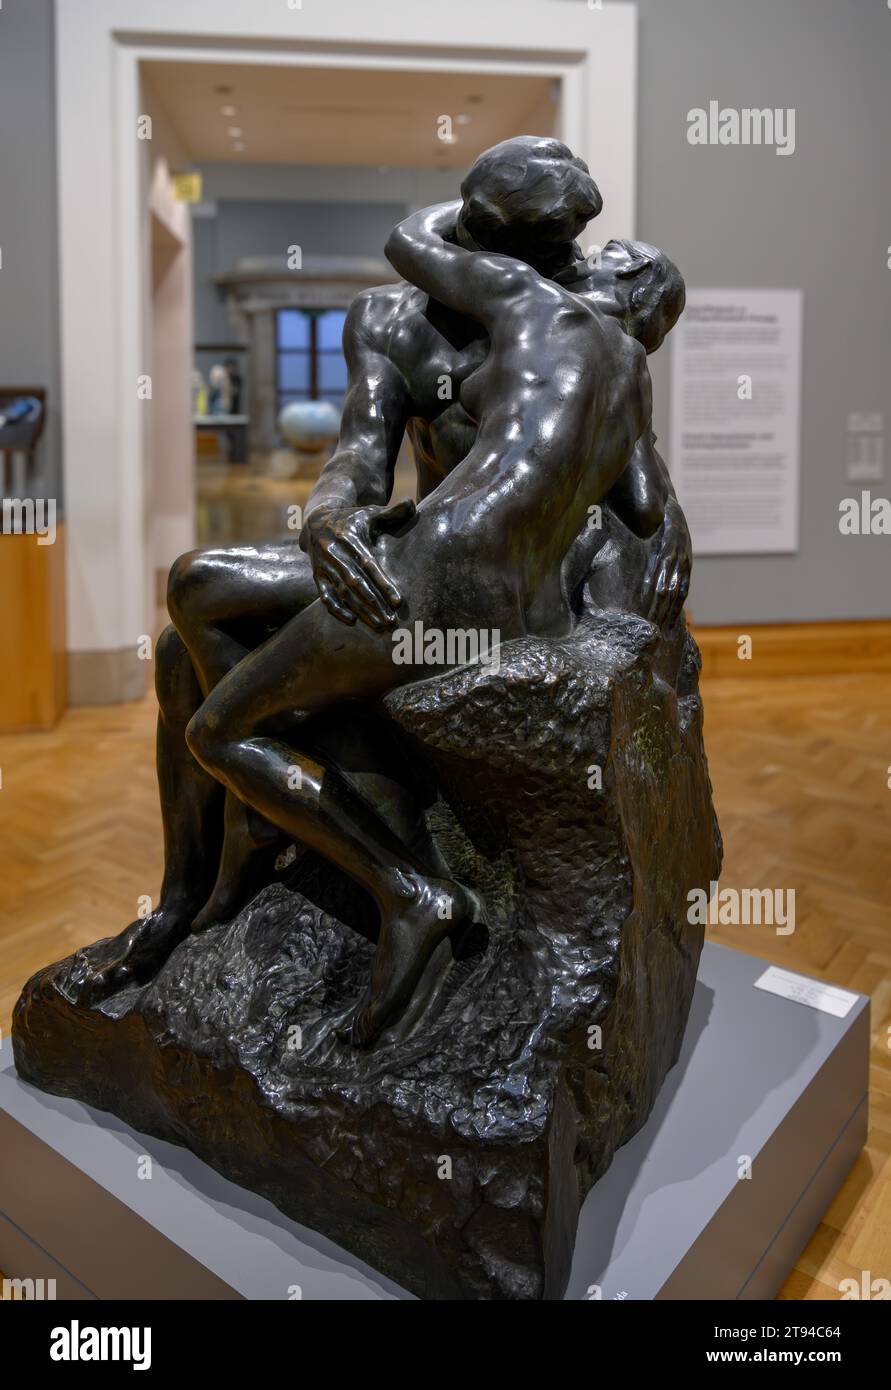 Rodin. Le Baiser d'Auguste Rodin (1840-1917), bronze, c. 1887, Musée national de Cardiff, pays de Galles Banque D'Images